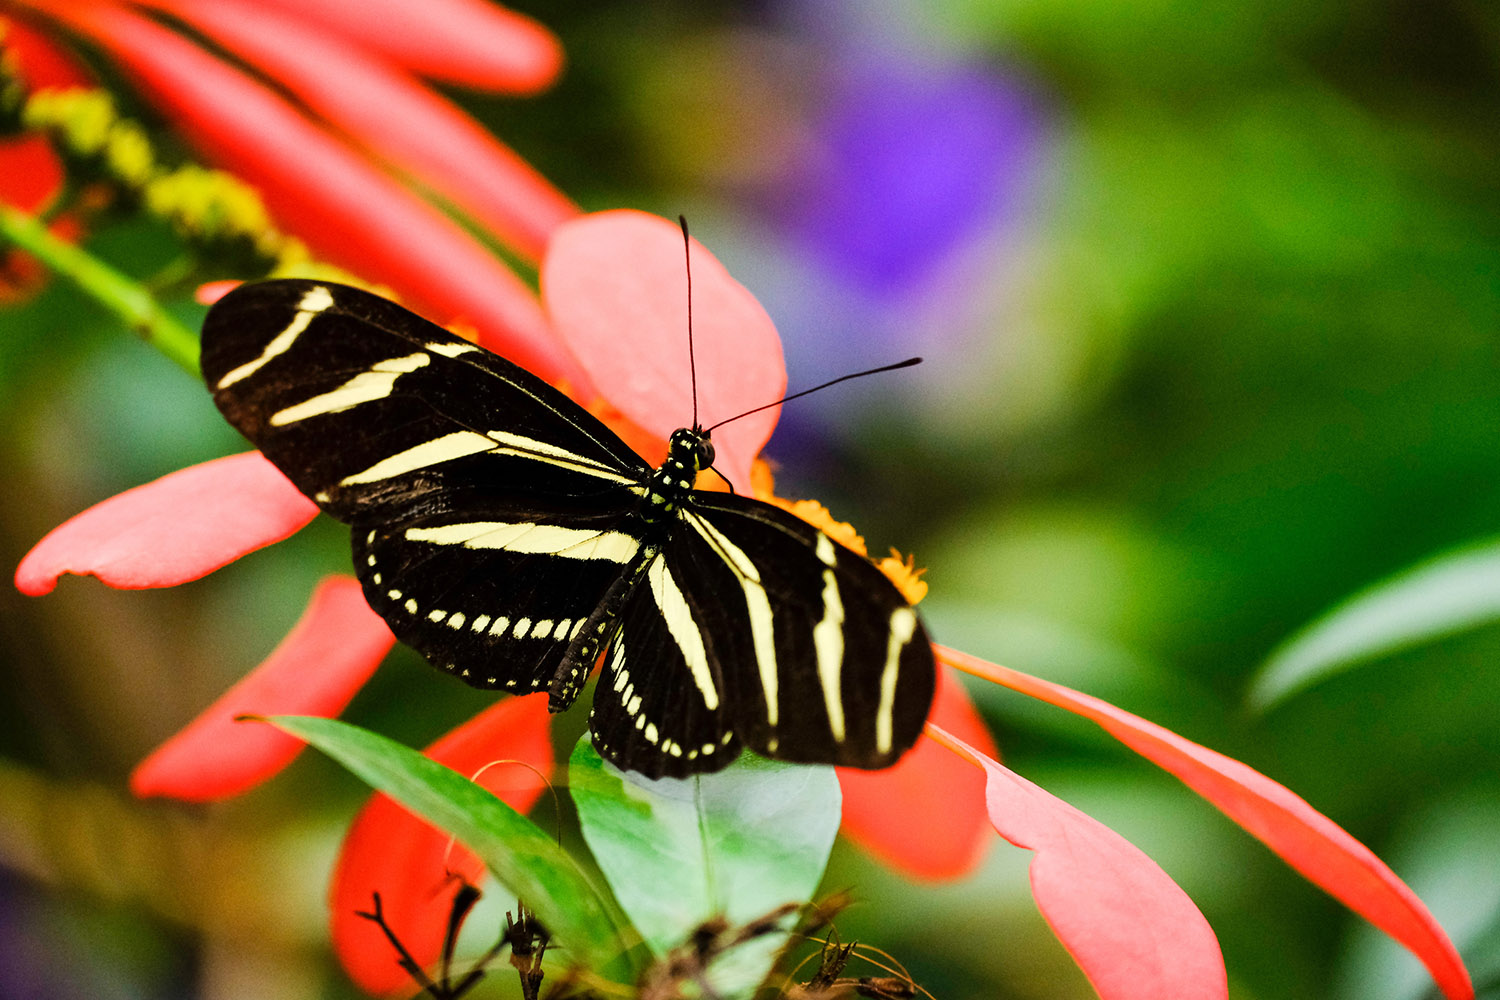 A zebra longwing butterfly feeding on a Flower with it's wings spread open